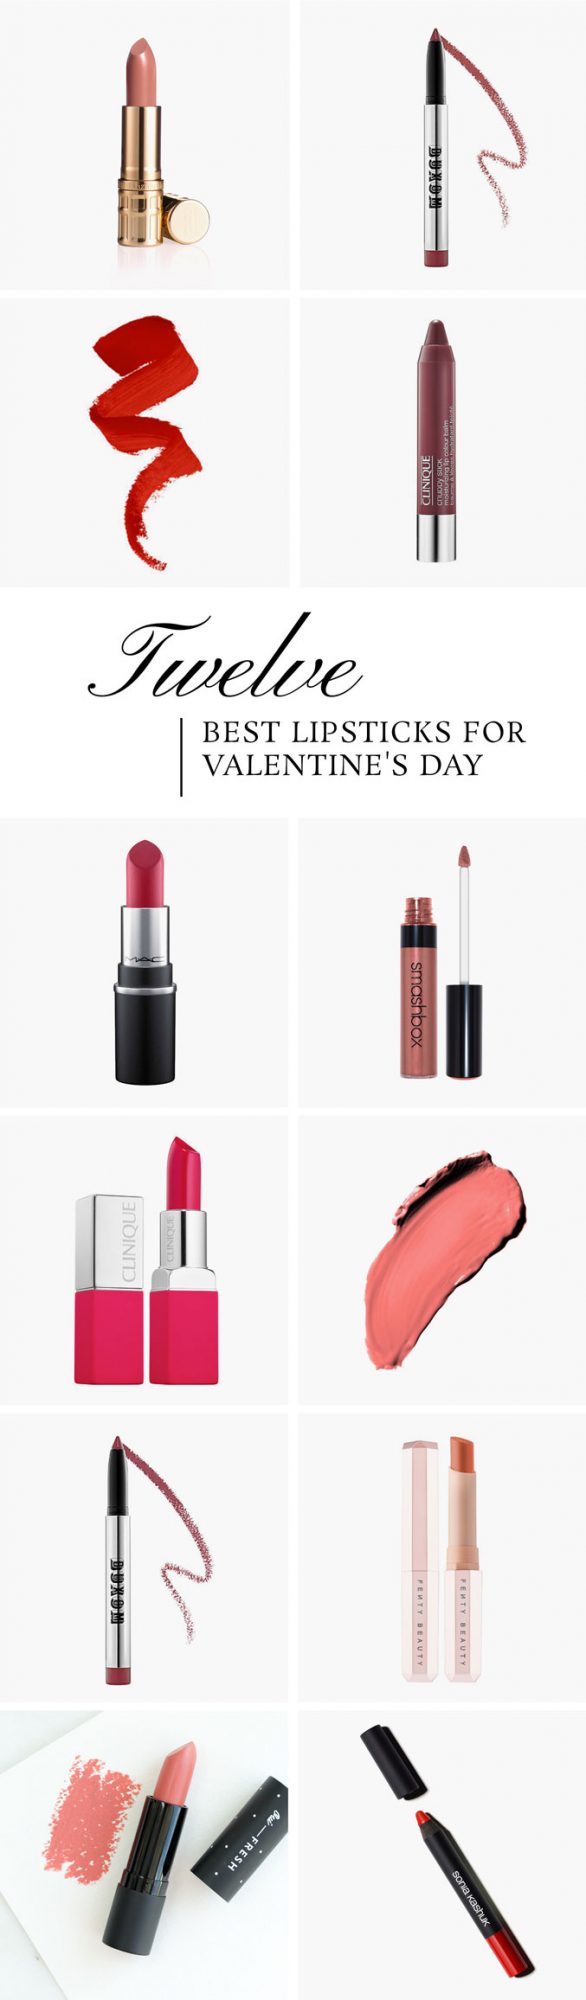 12 Best Lipsticks For Valentine's Day - Dream Green DIY